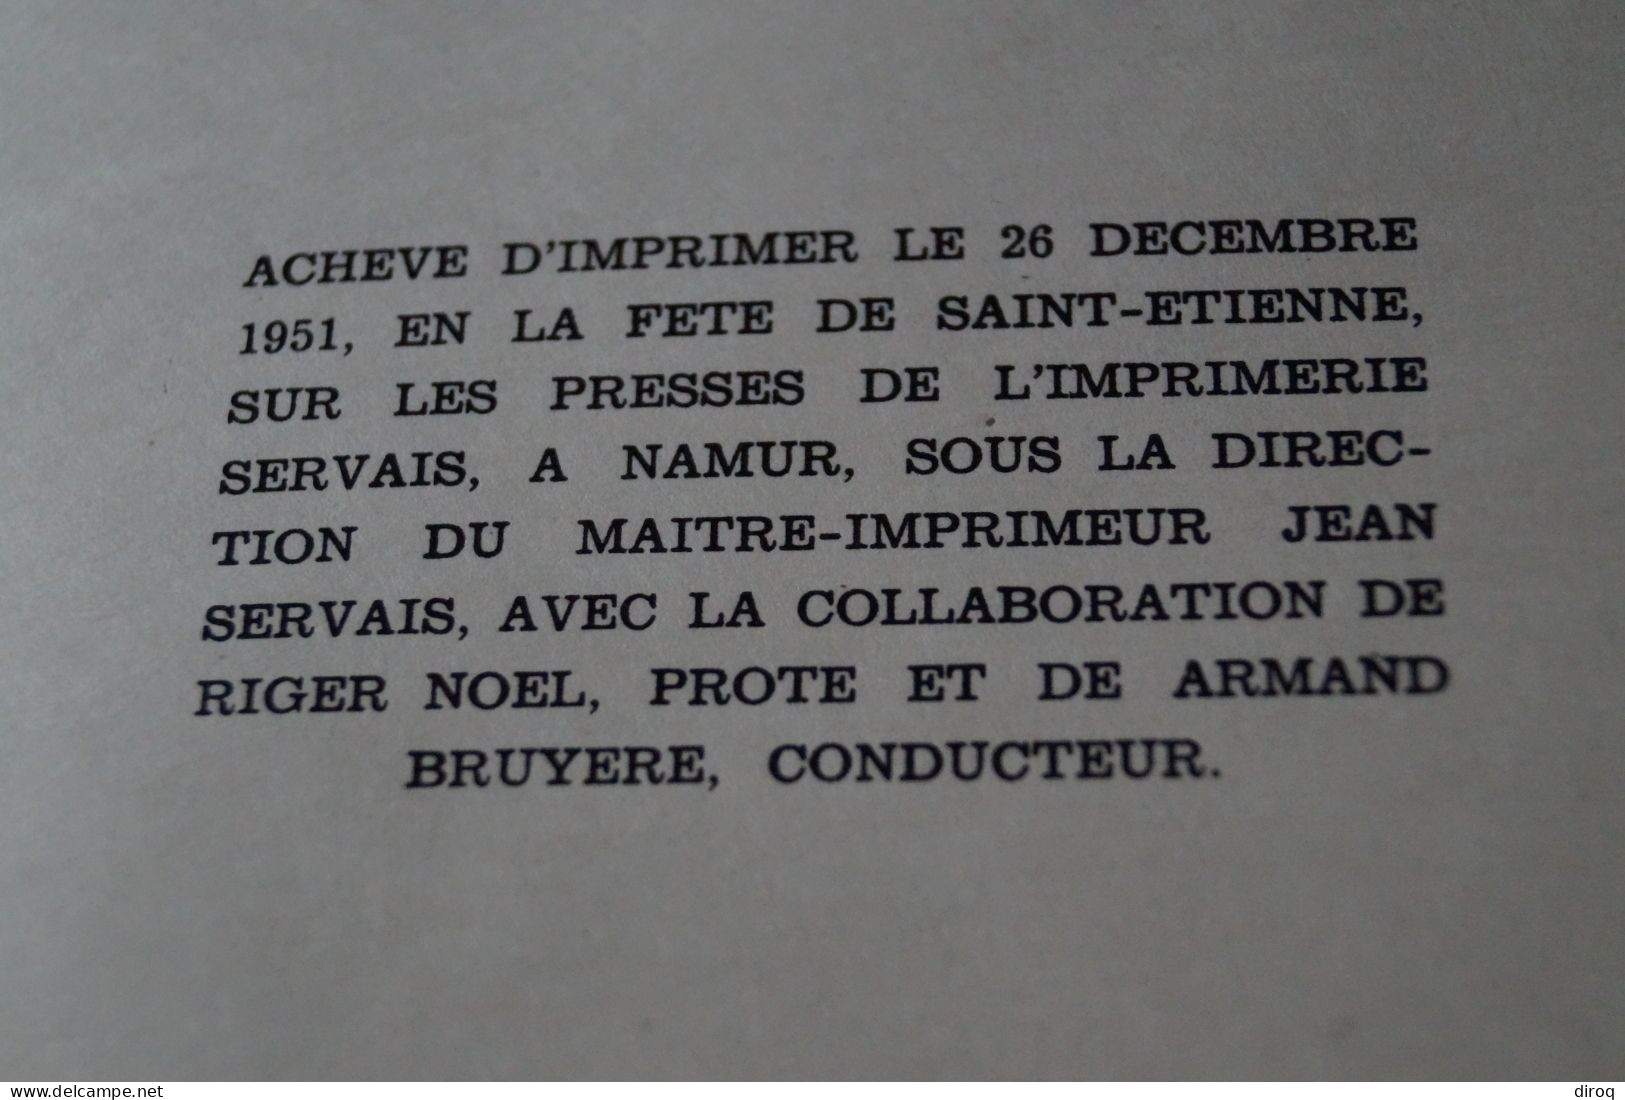 RARE sur papier Japon véritable,Aurzîye,Jean Guillaume,N° 4 sur 5,complet,1951,24,5 Cm./22 Cm.